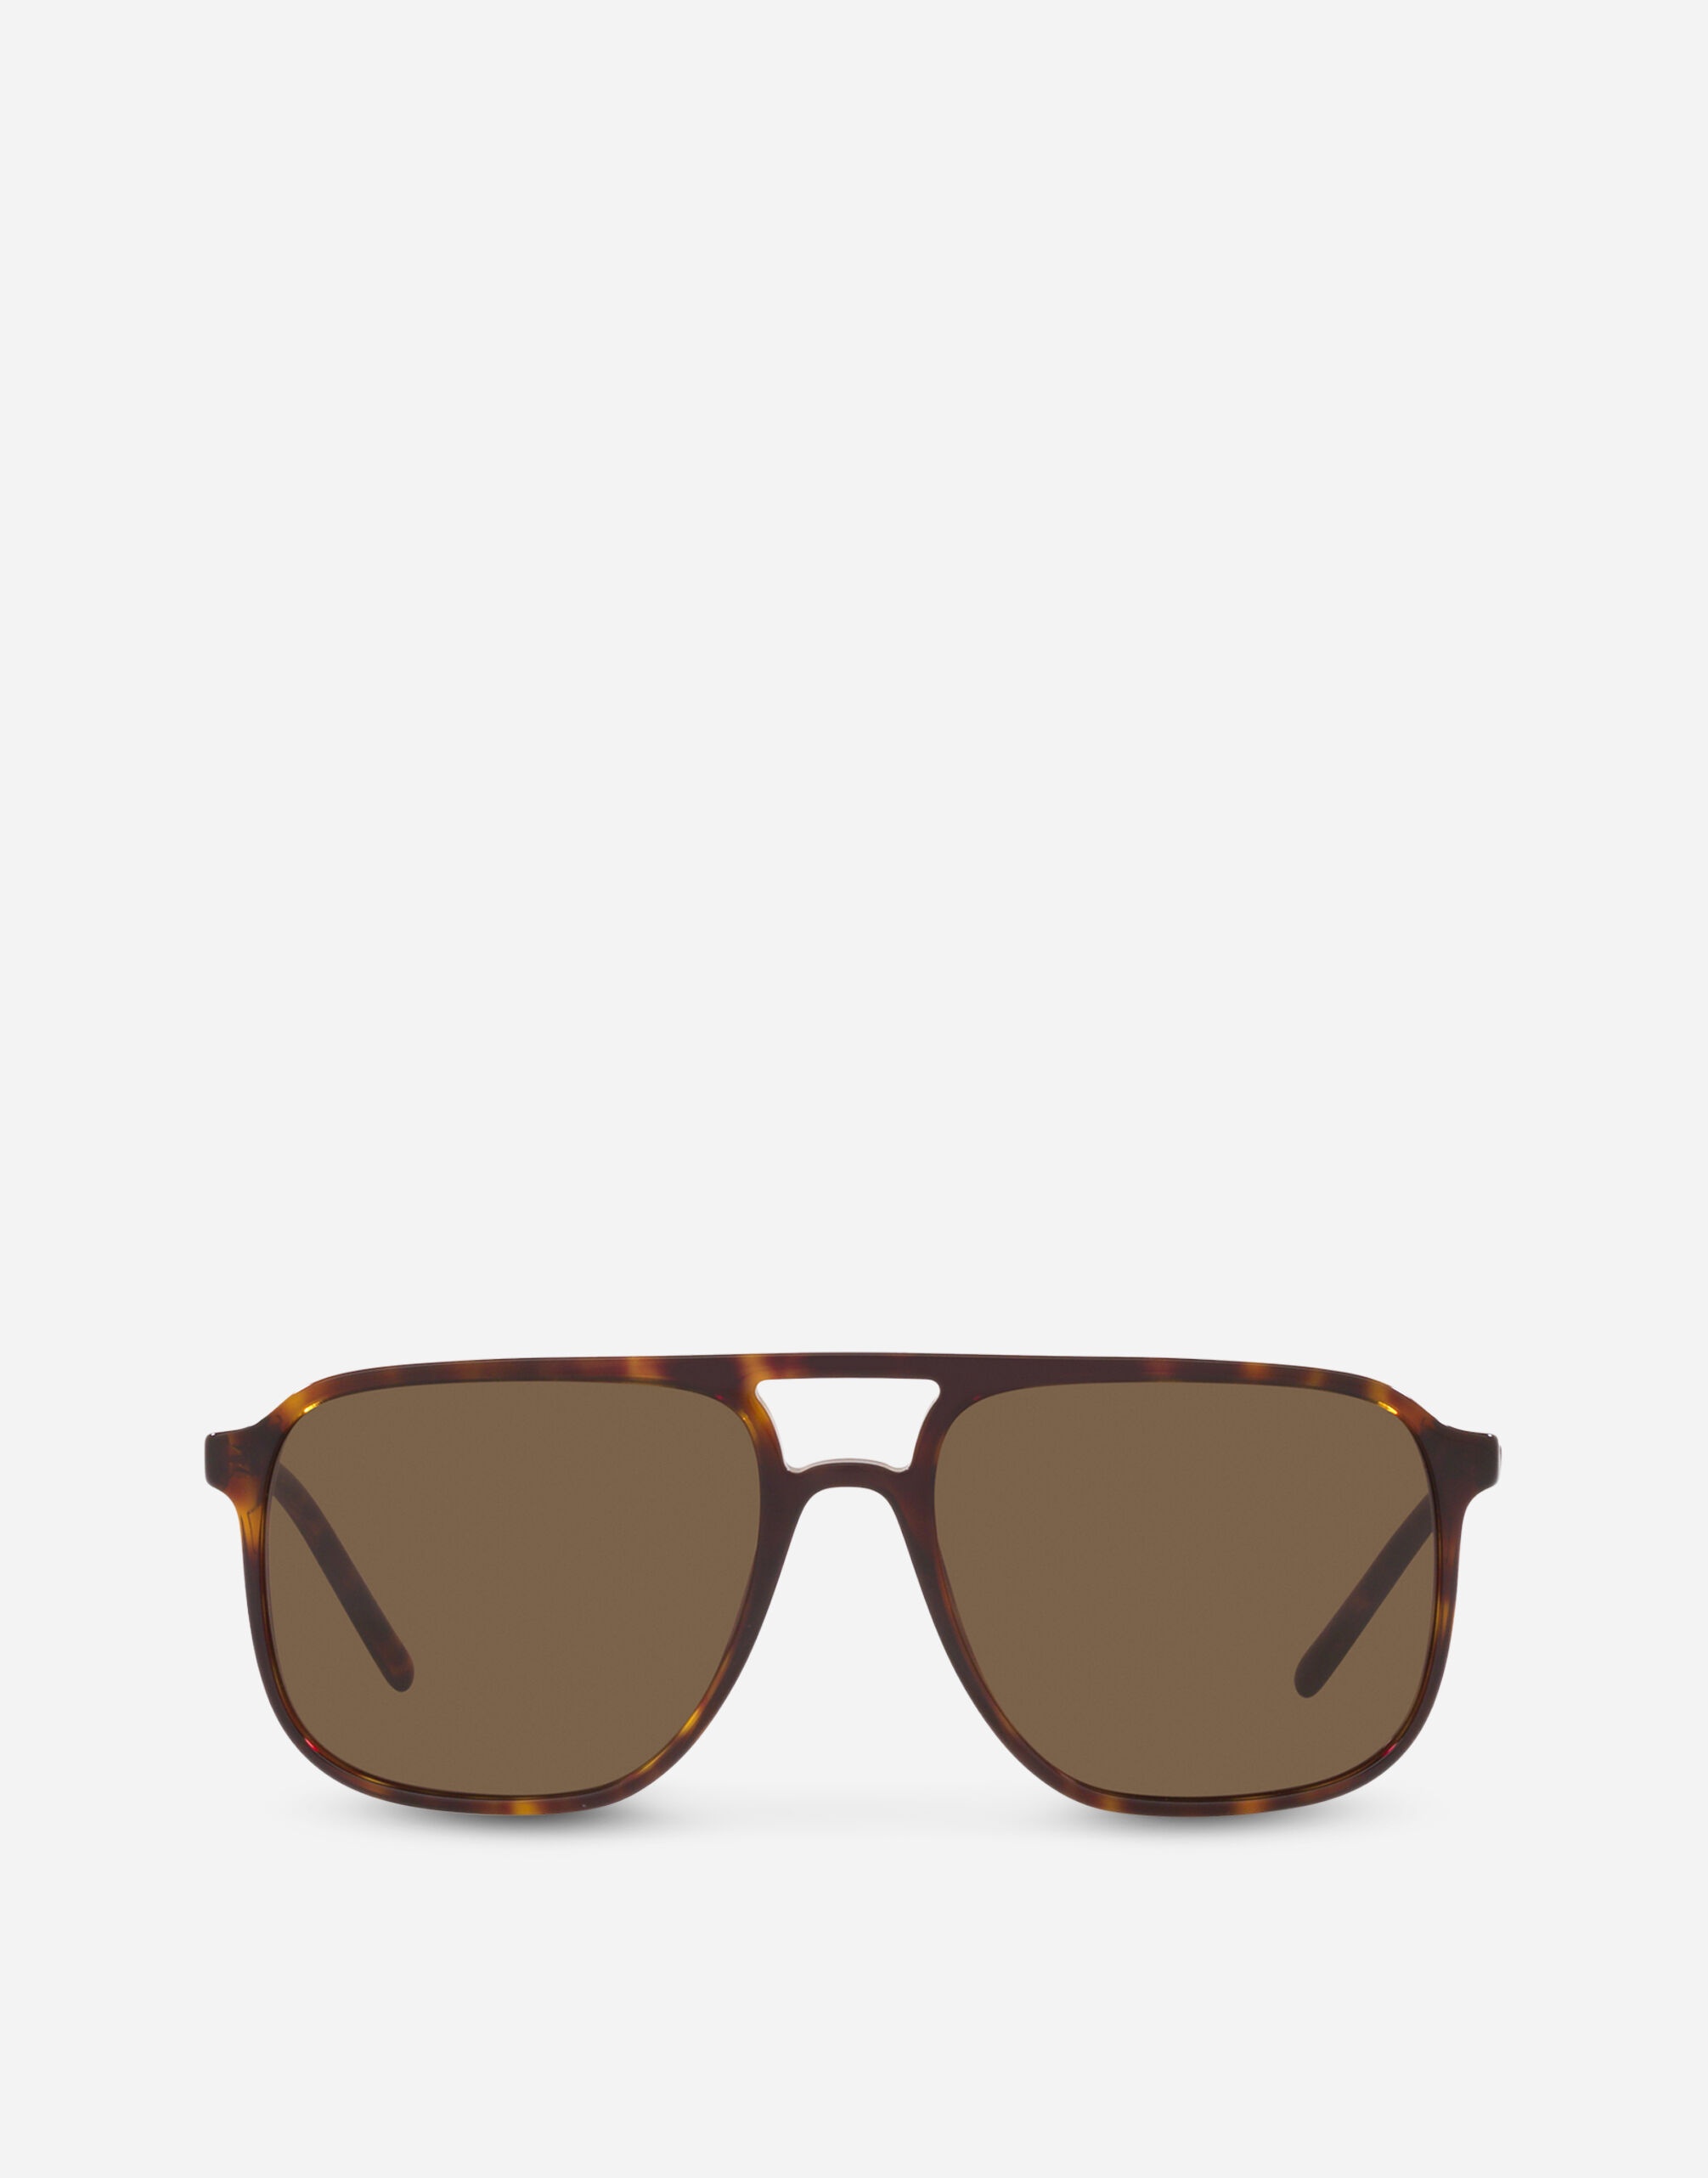 Thin profile sunglasses - 1